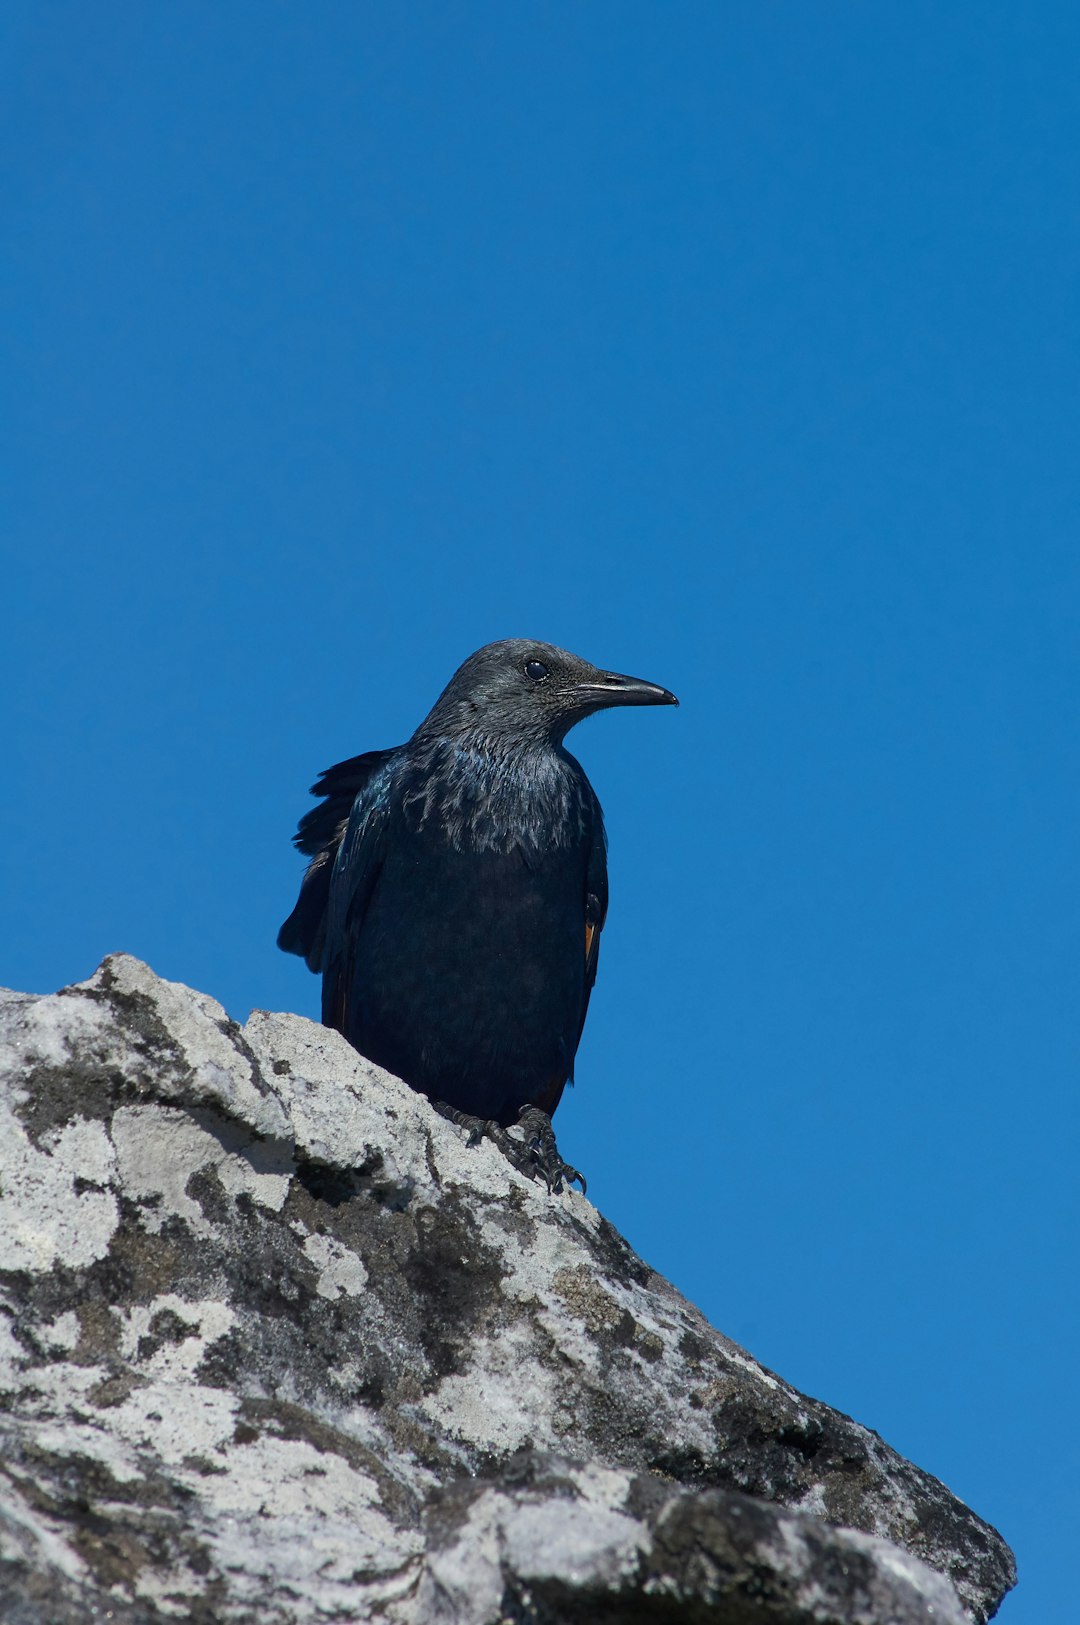 black bird on gray rock during daytime